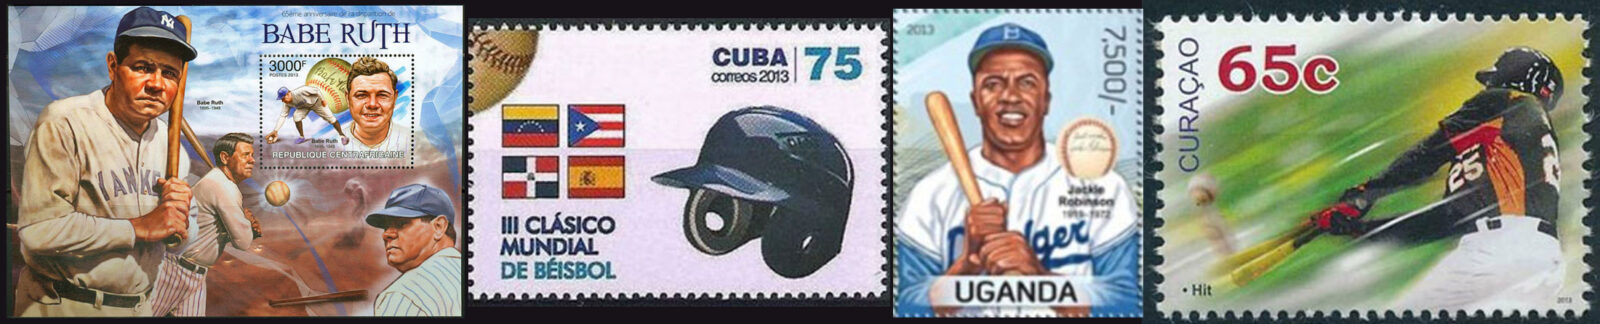 2013 Baseball Postage Stamps header